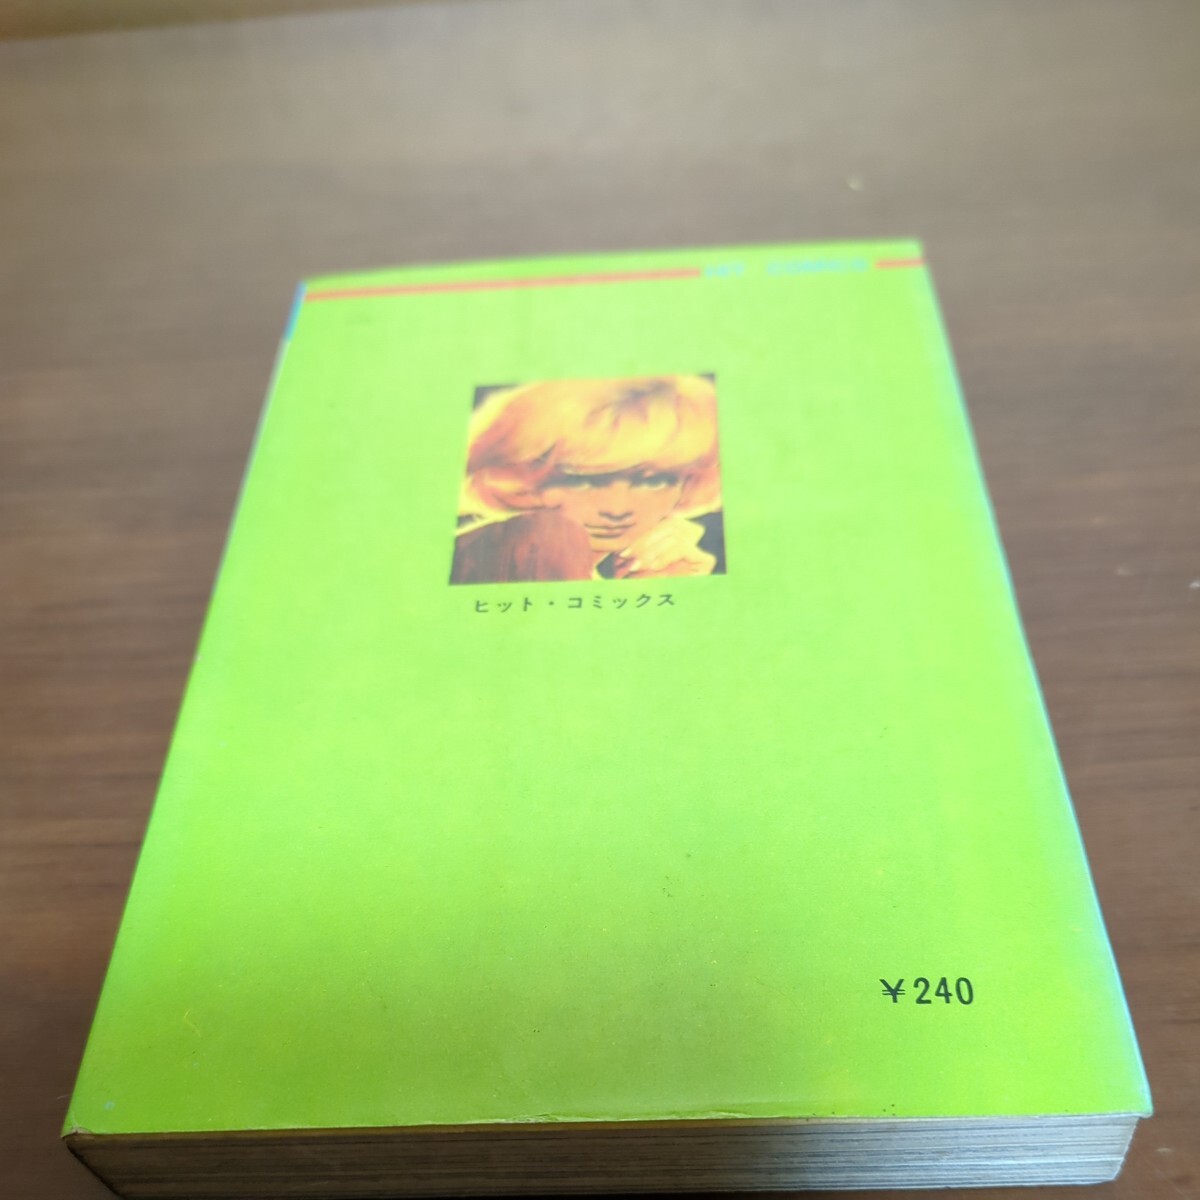 [ четверг. licca ] оригинальное произведение маленький . один самец гэкига сосна лес правильный Shonen-gahosha Co., Ltd. Showa манга книга